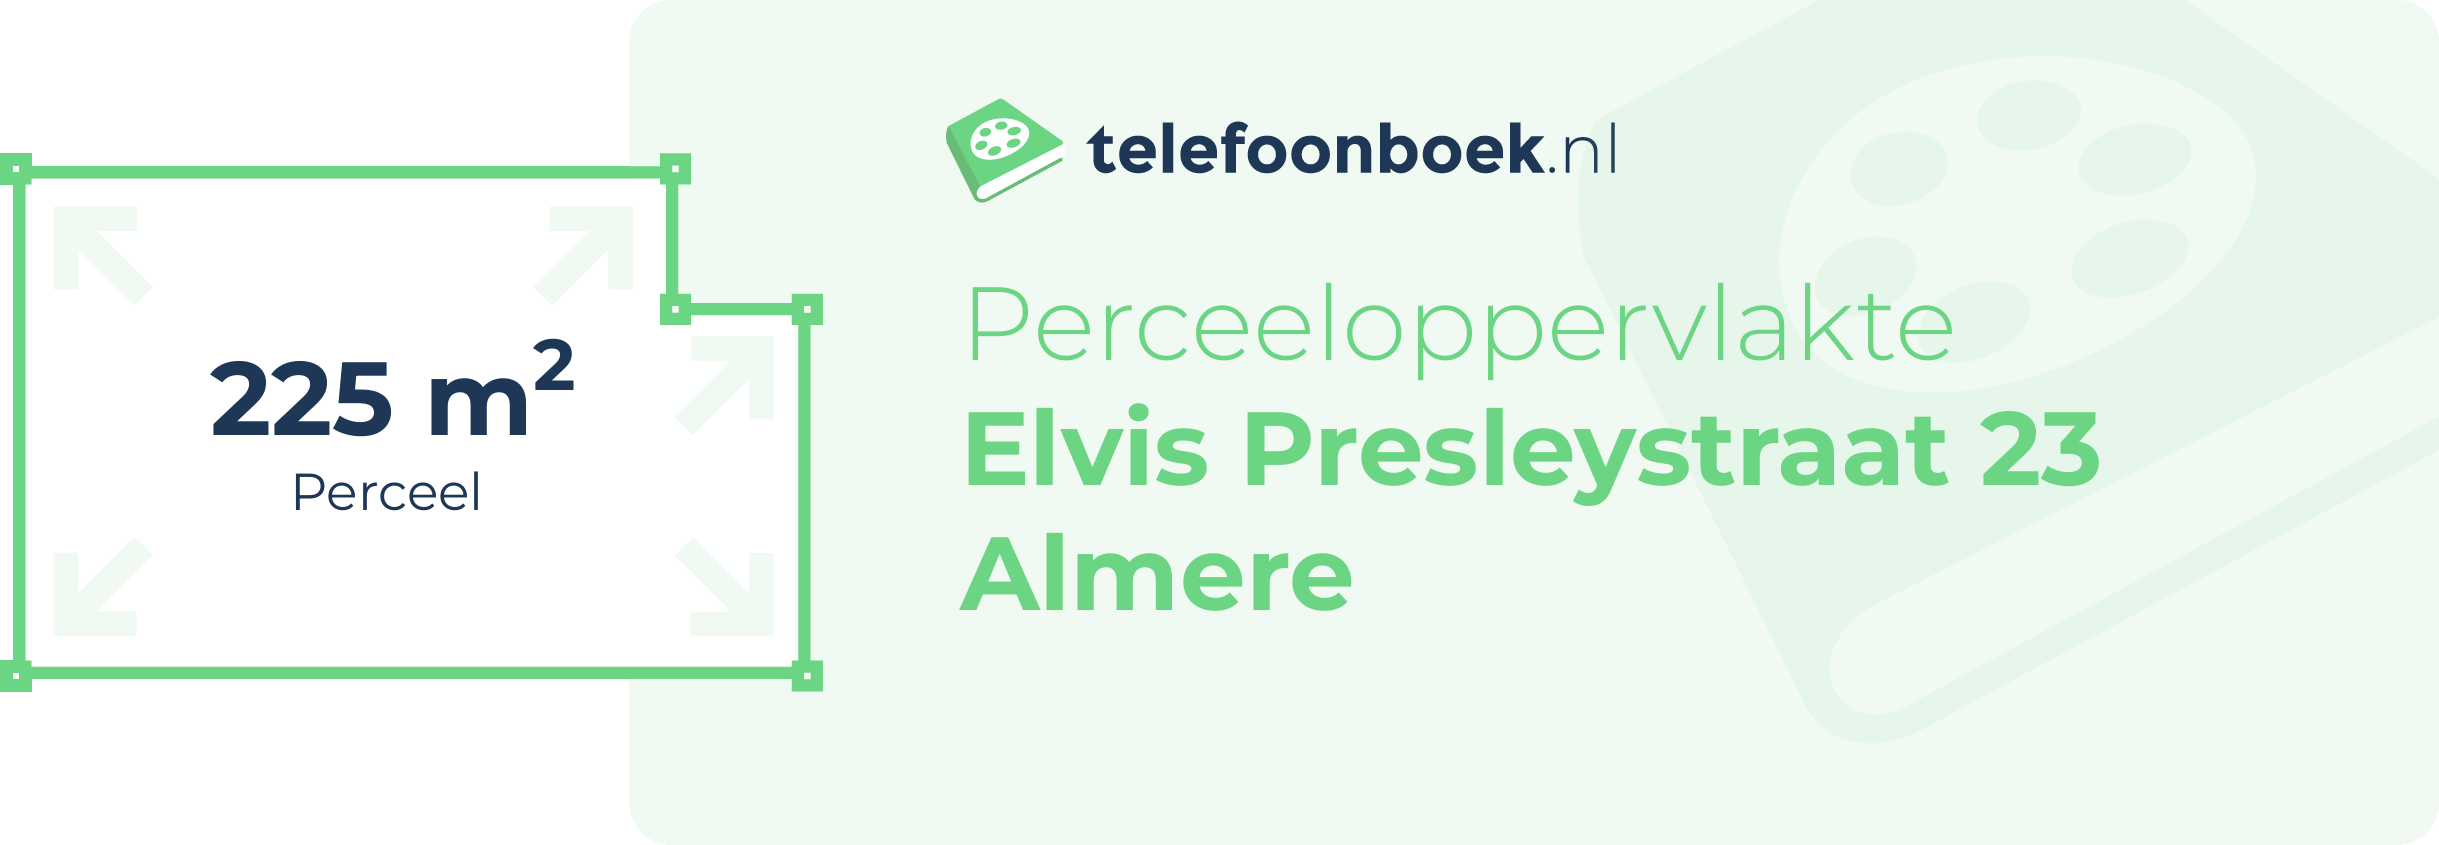 Perceeloppervlakte Elvis Presleystraat 23 Almere